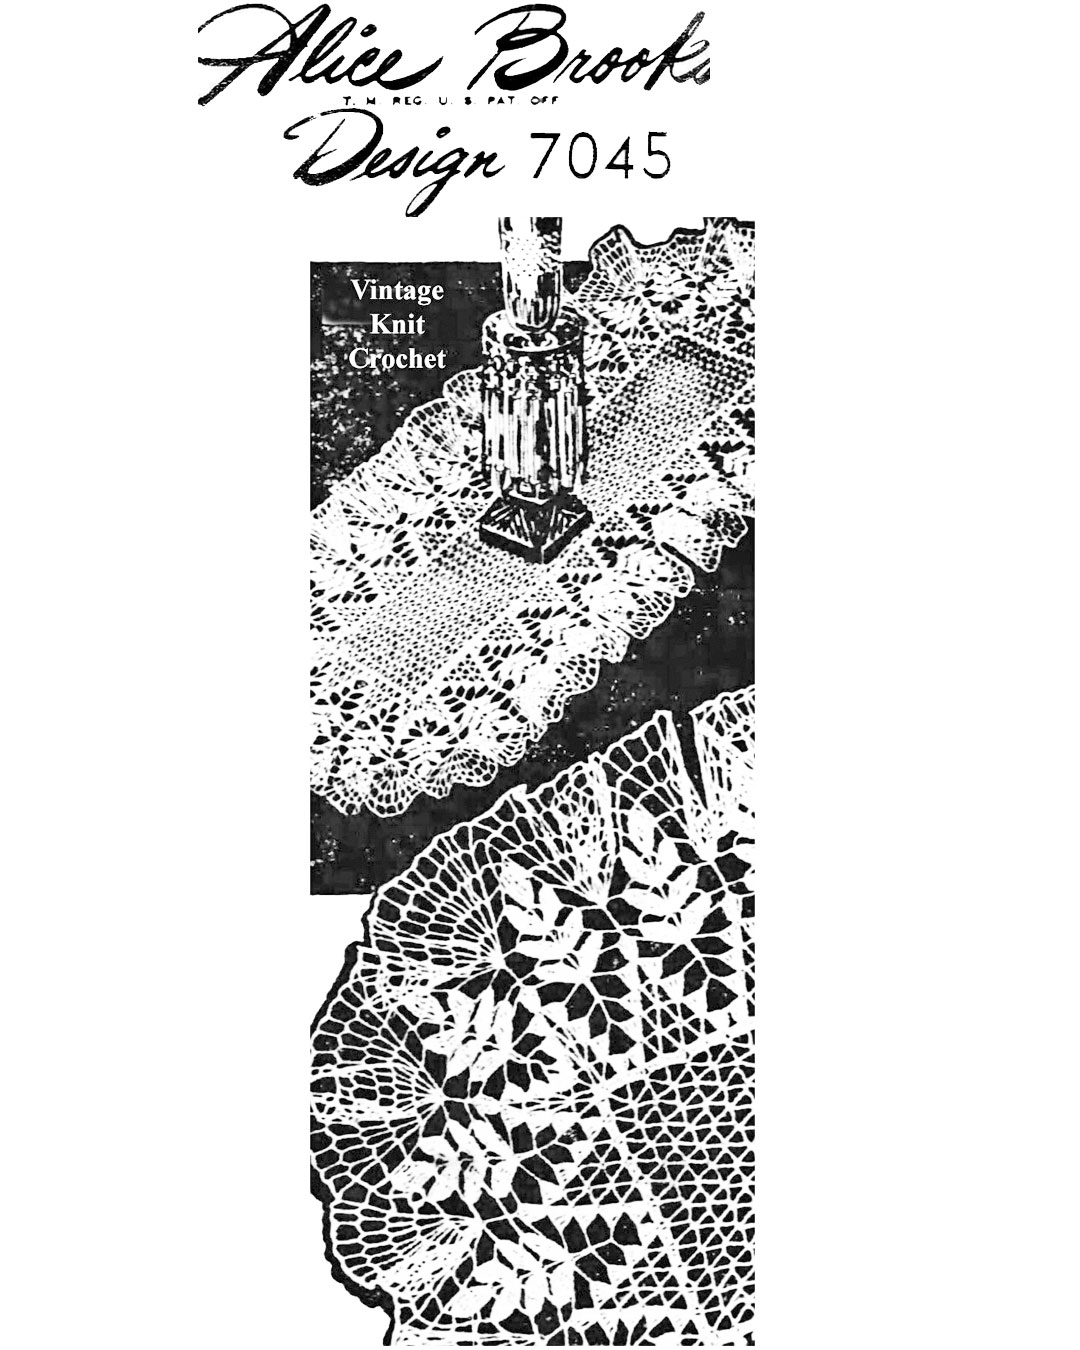 Crochet Fern Doily Runner Pattern Newspaper Advertisement for Mail Order Design 7045